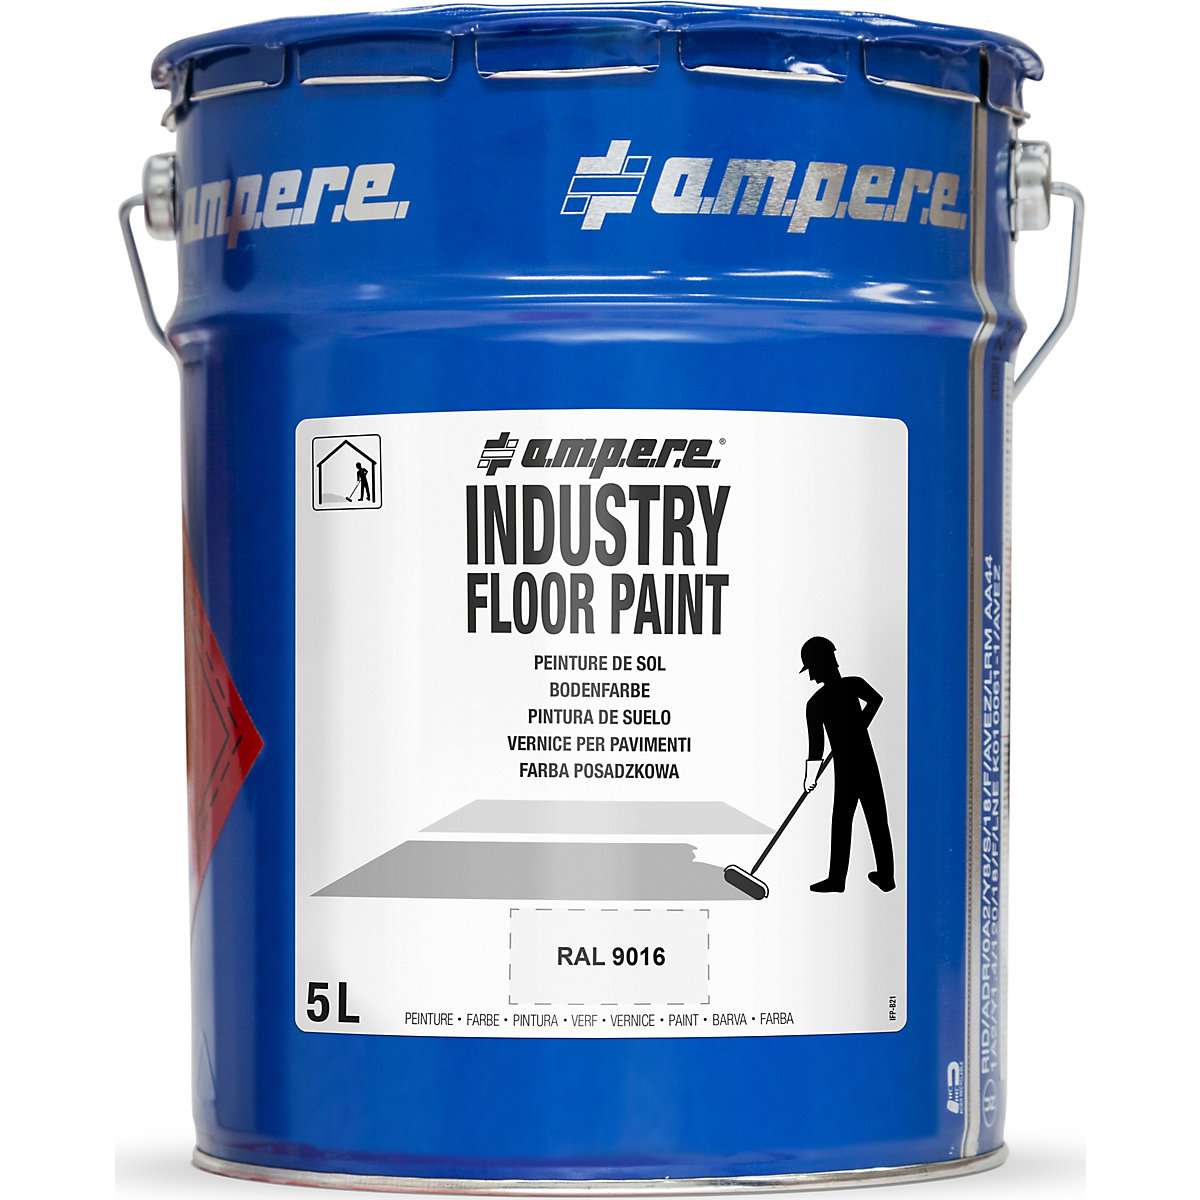 Vloermarkeringsverf Industry Floor Paint® – Ampere, inhoud 5 l, wit-4